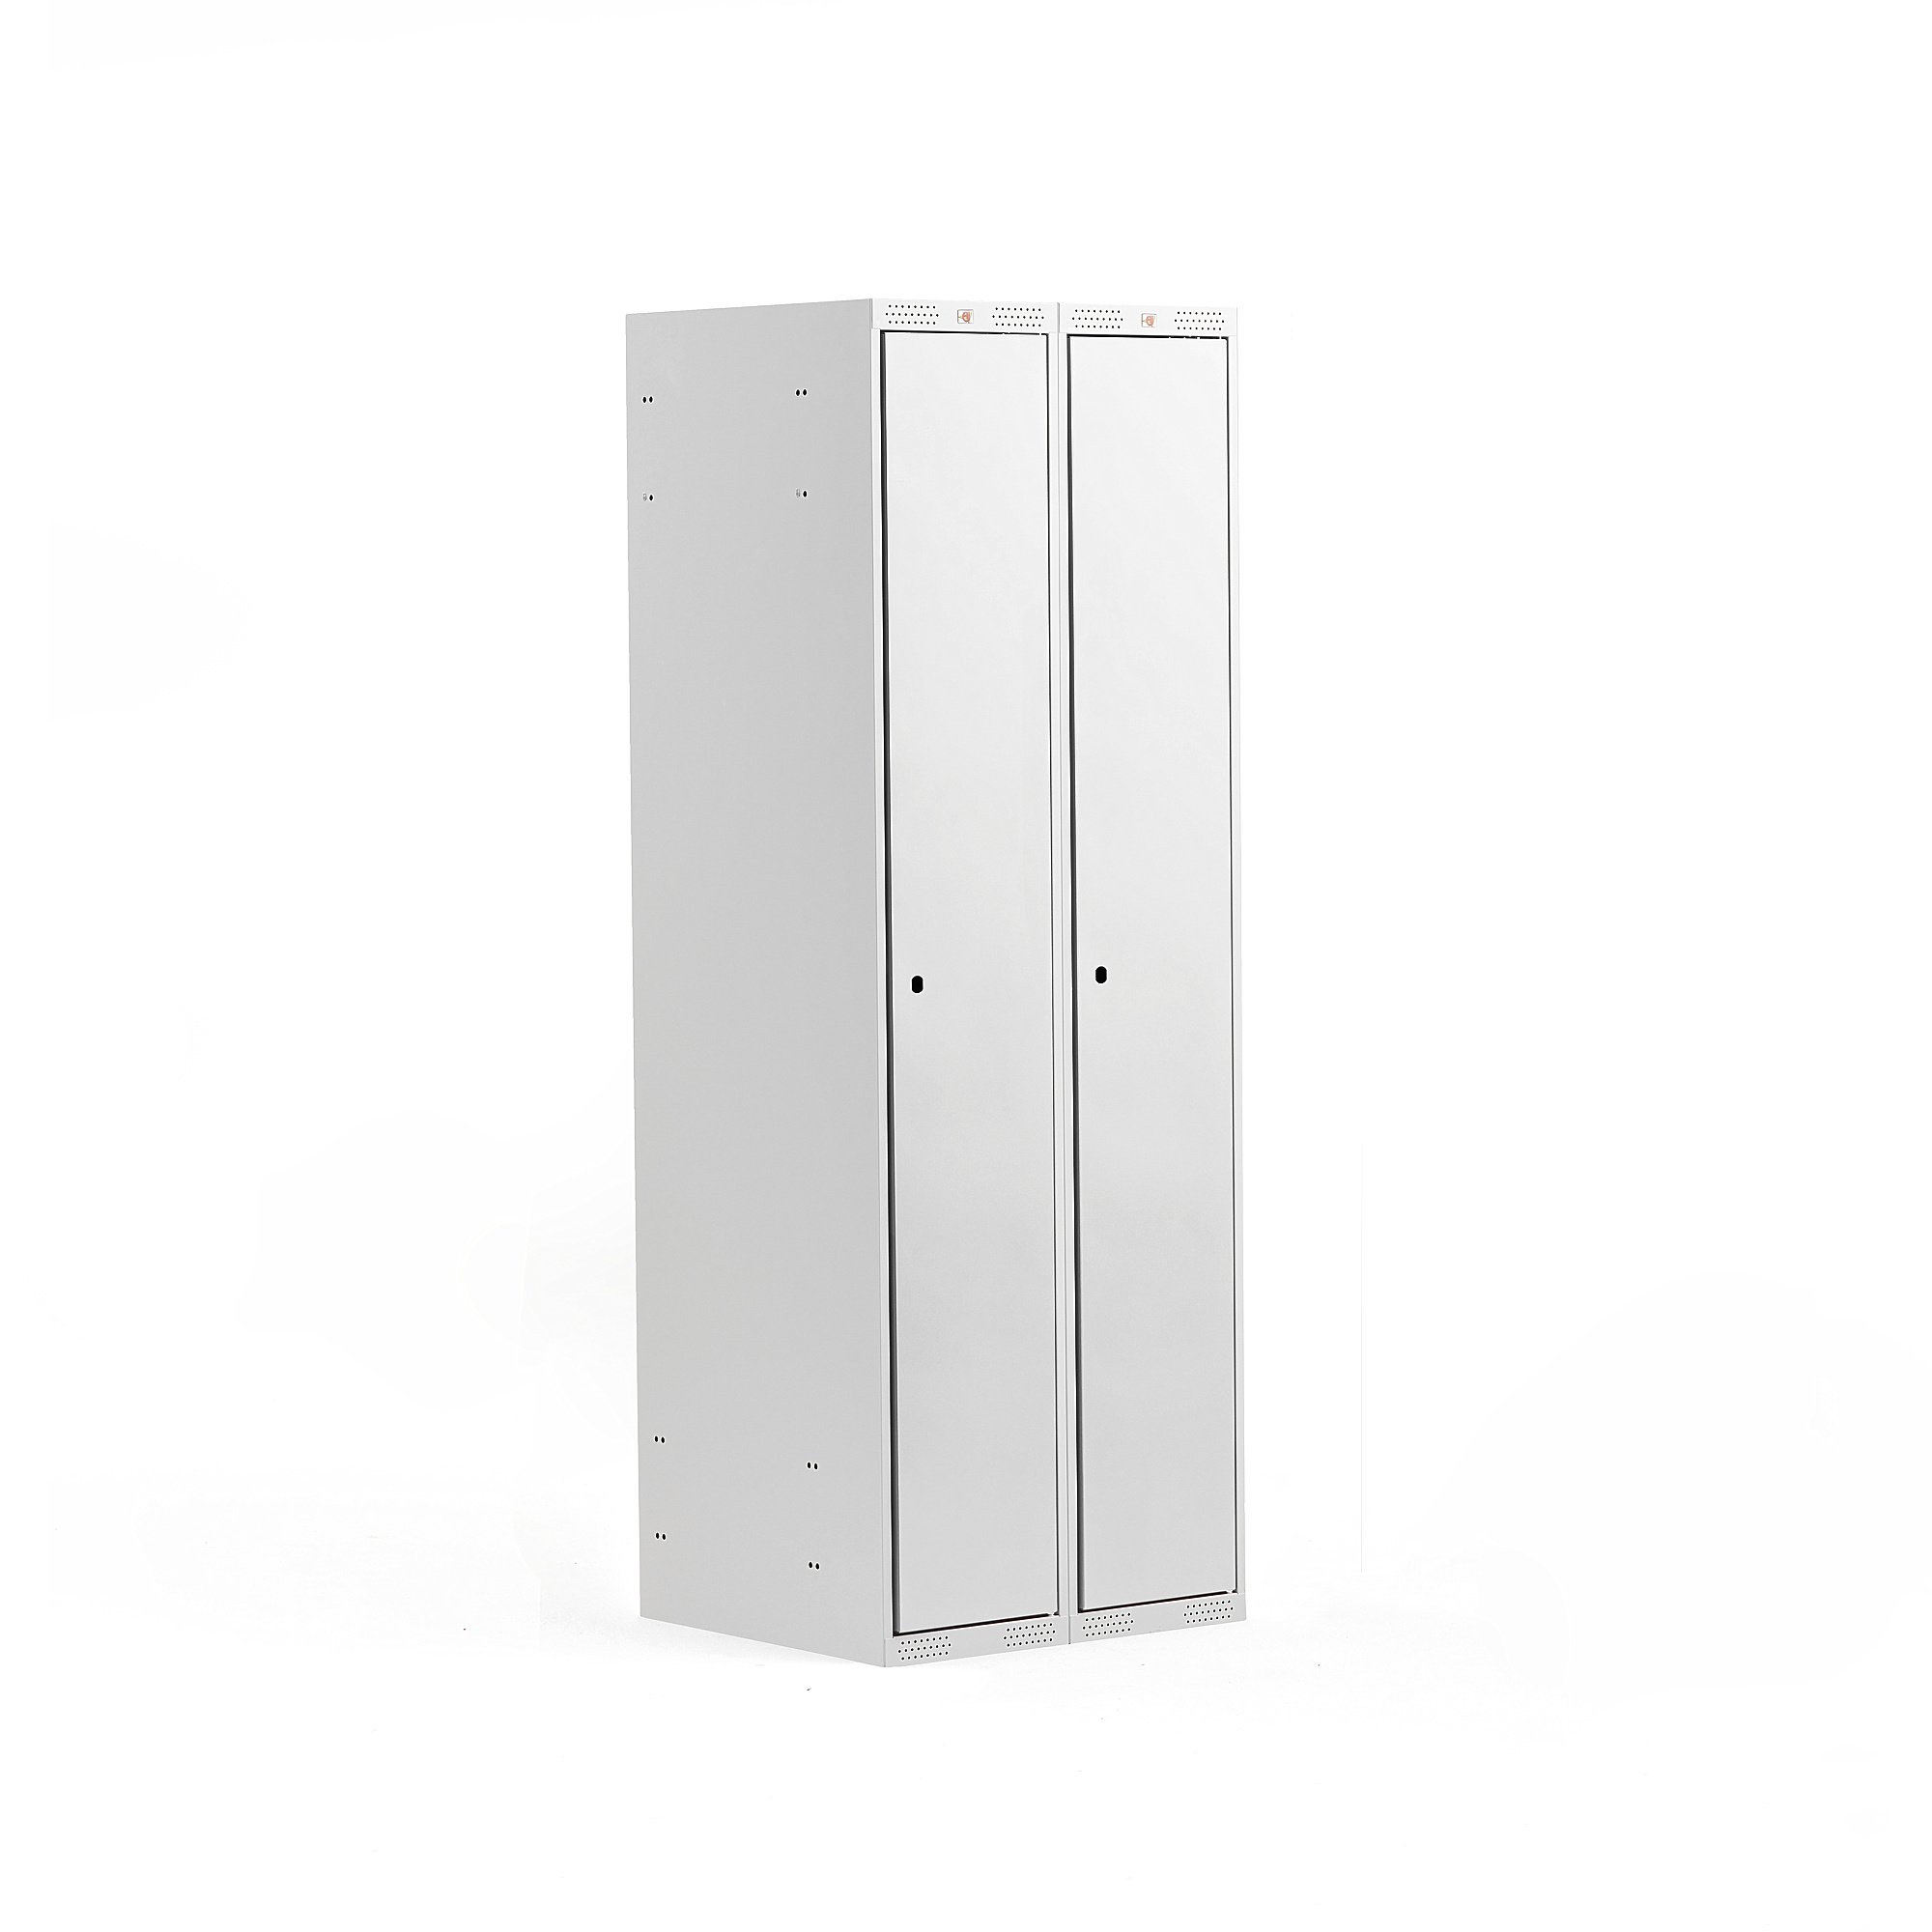 Šatní skříňka CLASSIC, 2 sekce, 1740x600x550 mm, šedá, šedé dveře